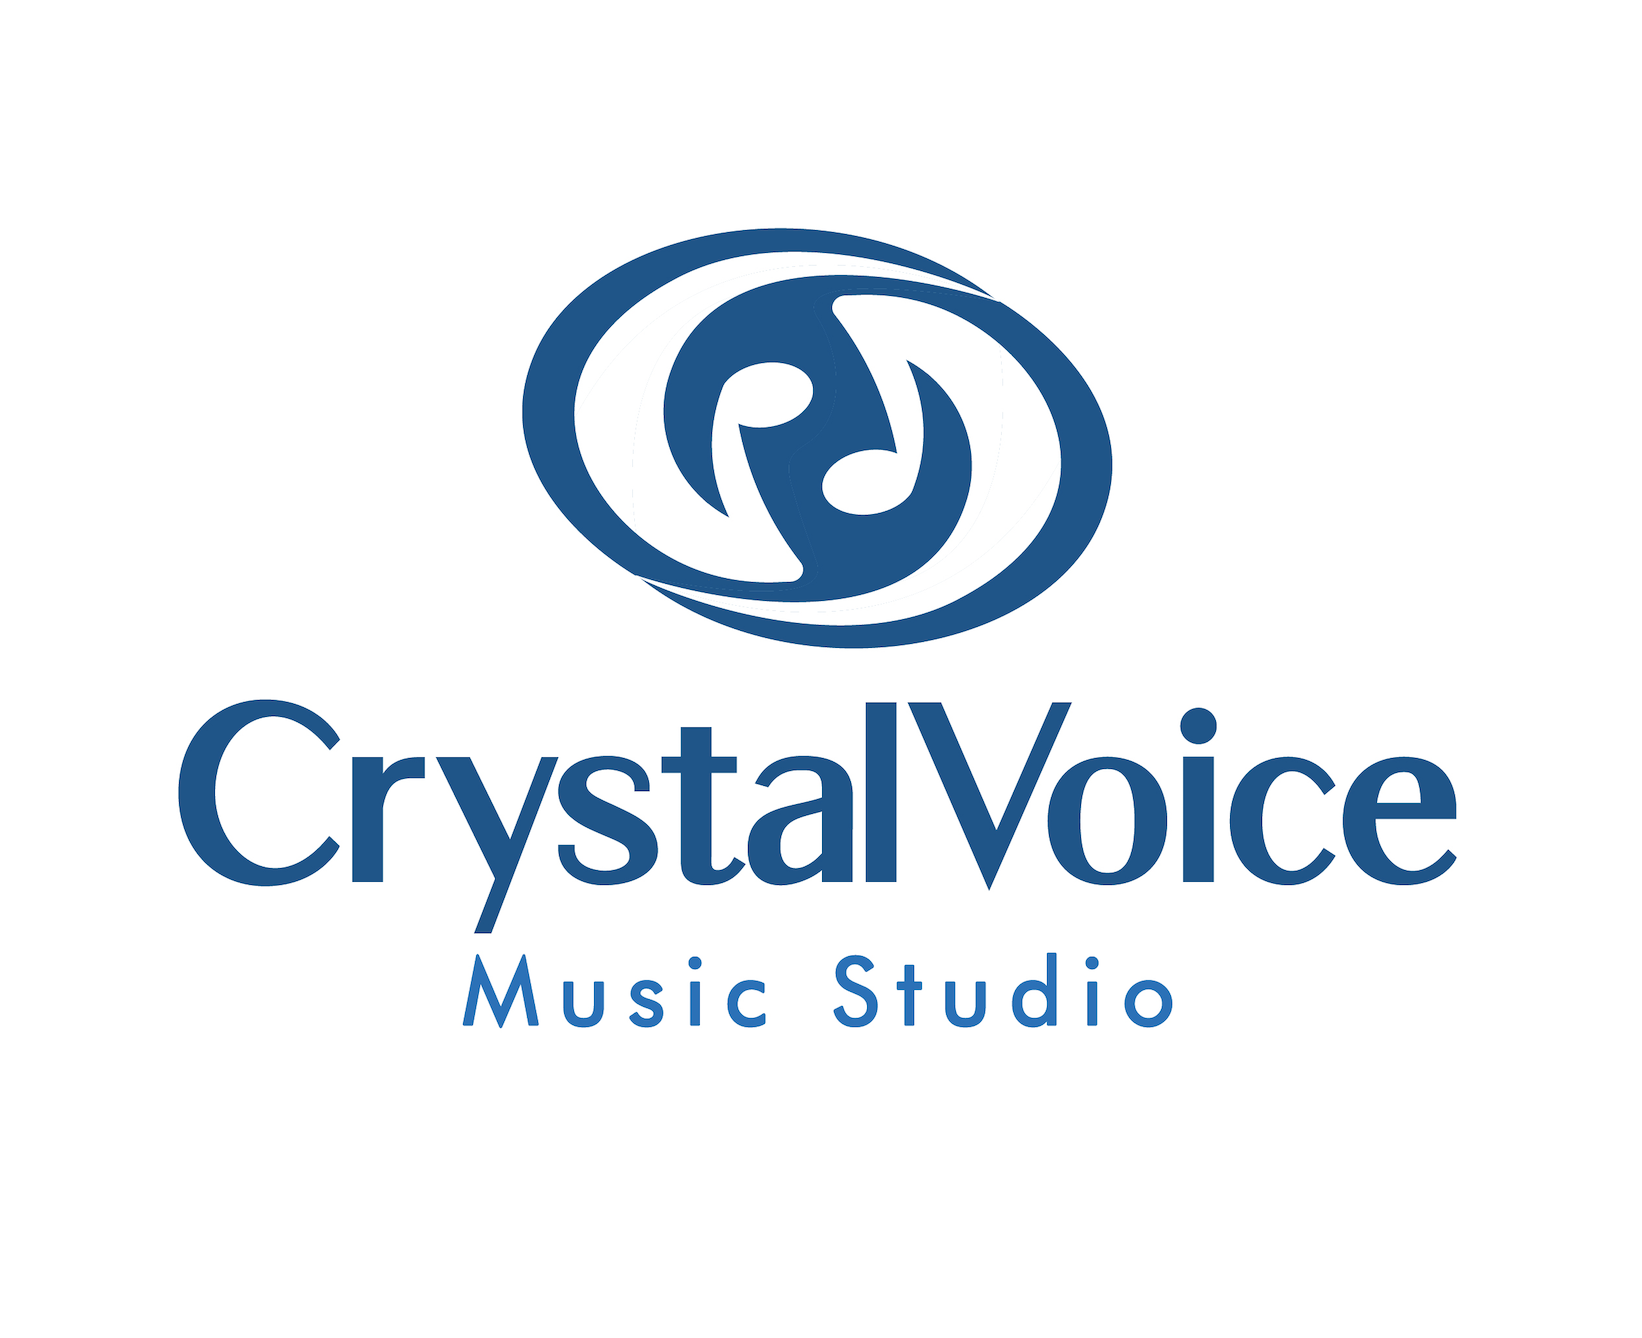 CrystalVoice Studio